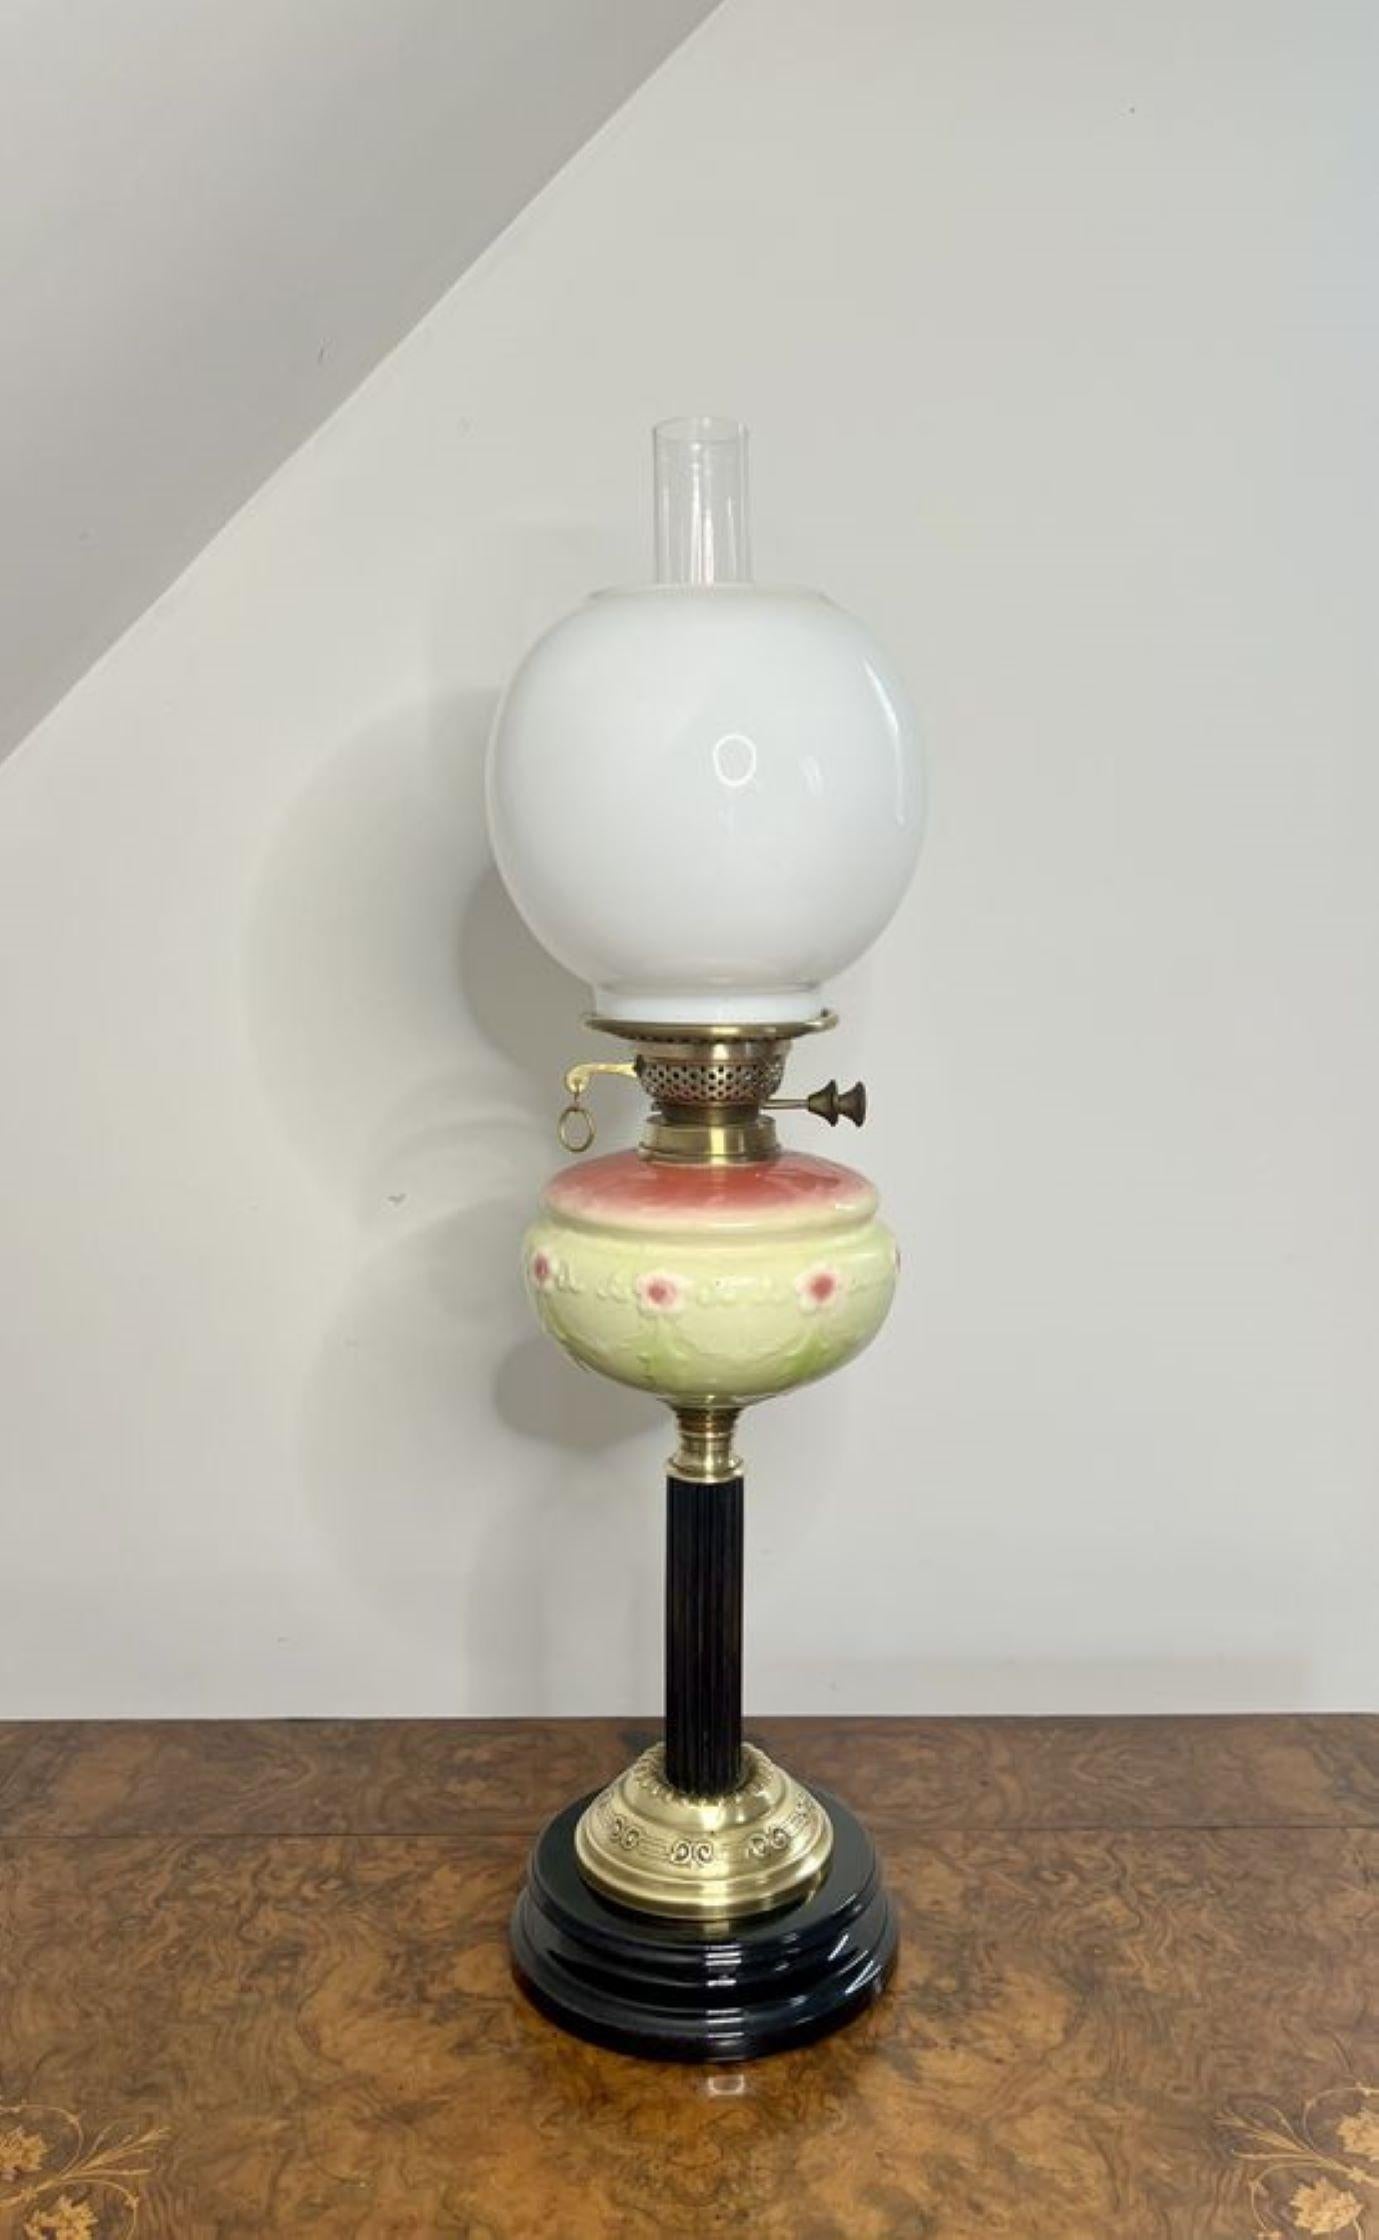 Atemberaubende Qualität antiken viktorianischen Öllampe mit einer Qualität Messing-Öllampe mit einem weißen Glas kugelförmigen Schatten, mit einem Vaseline-Glas-Reservoir mit einem gelben Grund und rosa Blumen, auf einer hölzernen Säule, auf einem